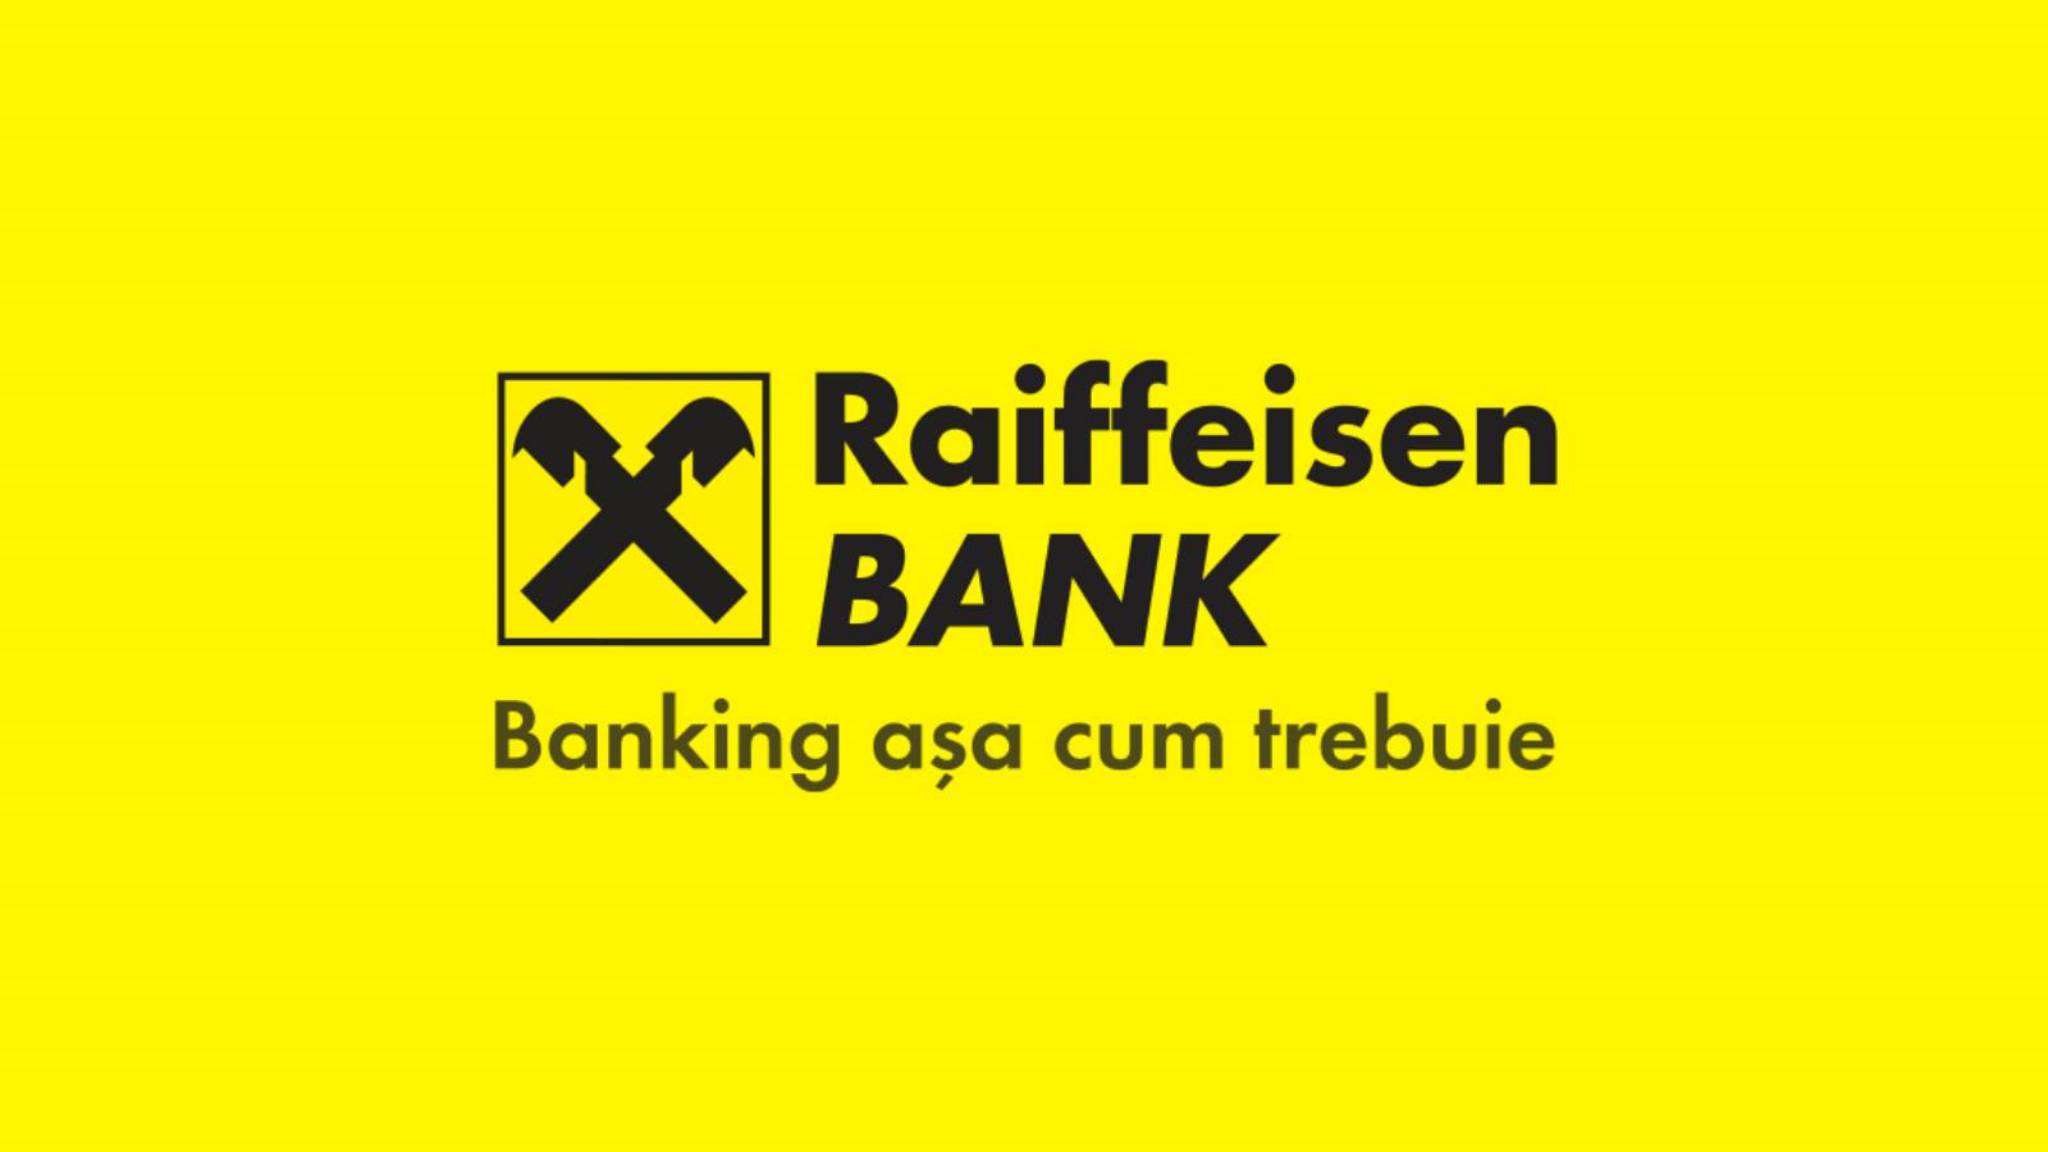 Oficjalne ujawnienie Raiffeisen Bank W OSTATNIEJ MINUCIE Uwaga rumuńscy klienci